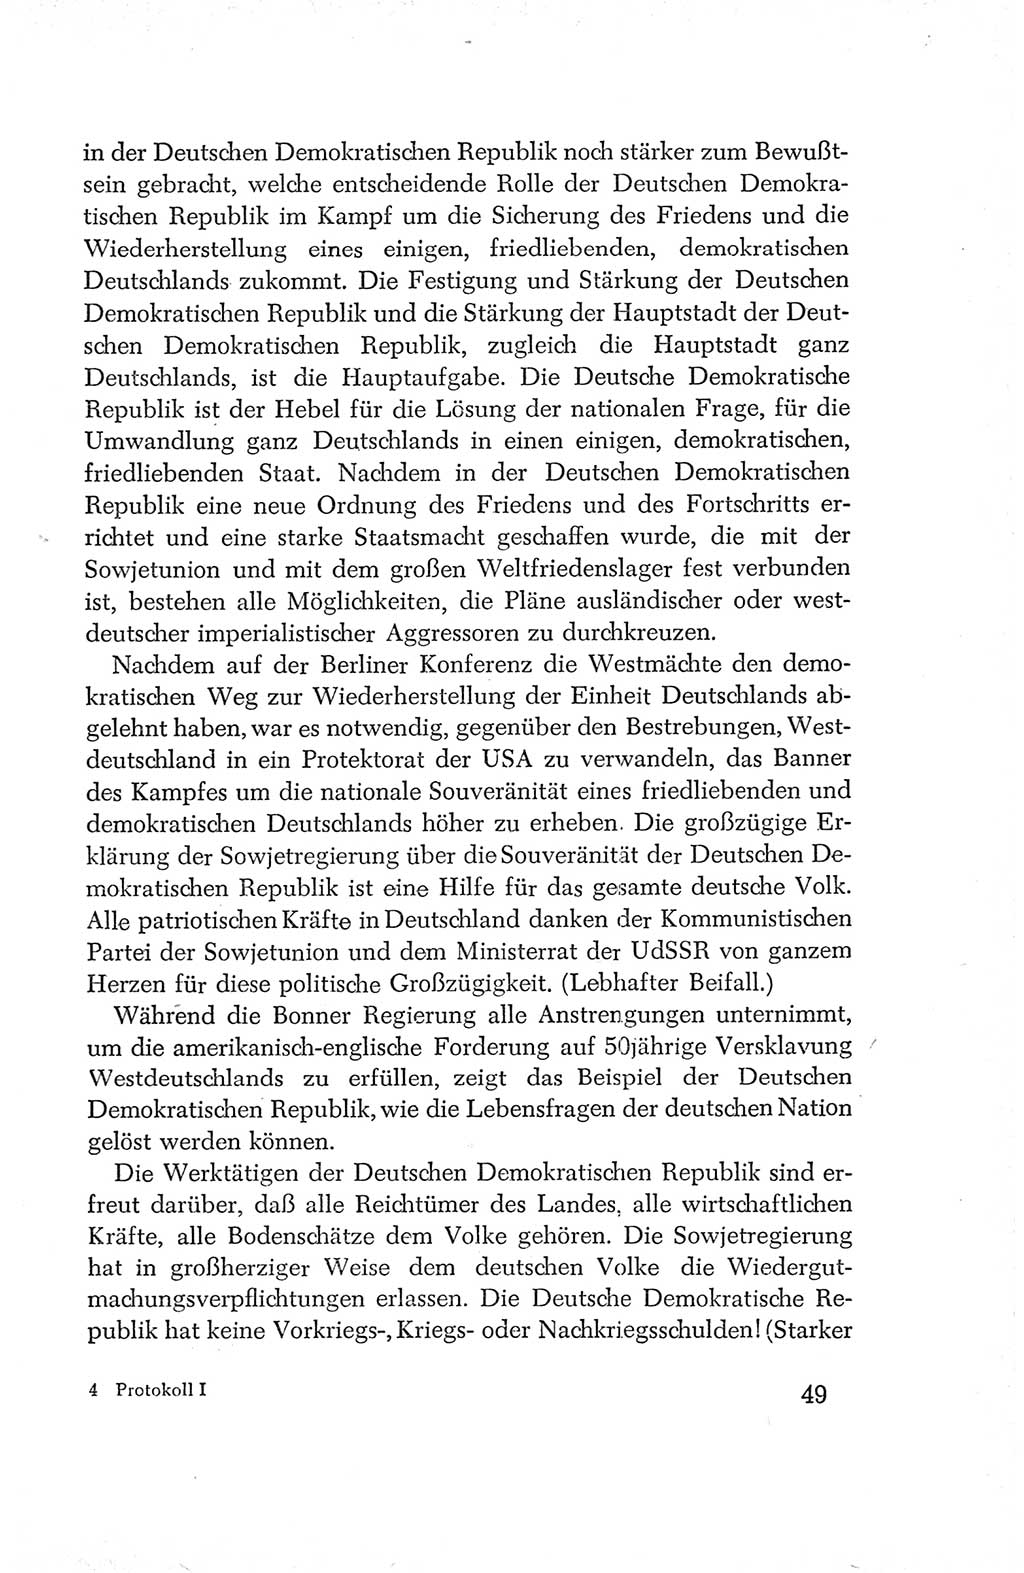 Protokoll der Verhandlungen des Ⅳ. Parteitages der Sozialistischen Einheitspartei Deutschlands (SED) [Deutsche Demokratische Republik (DDR)] 1954, Seite 49